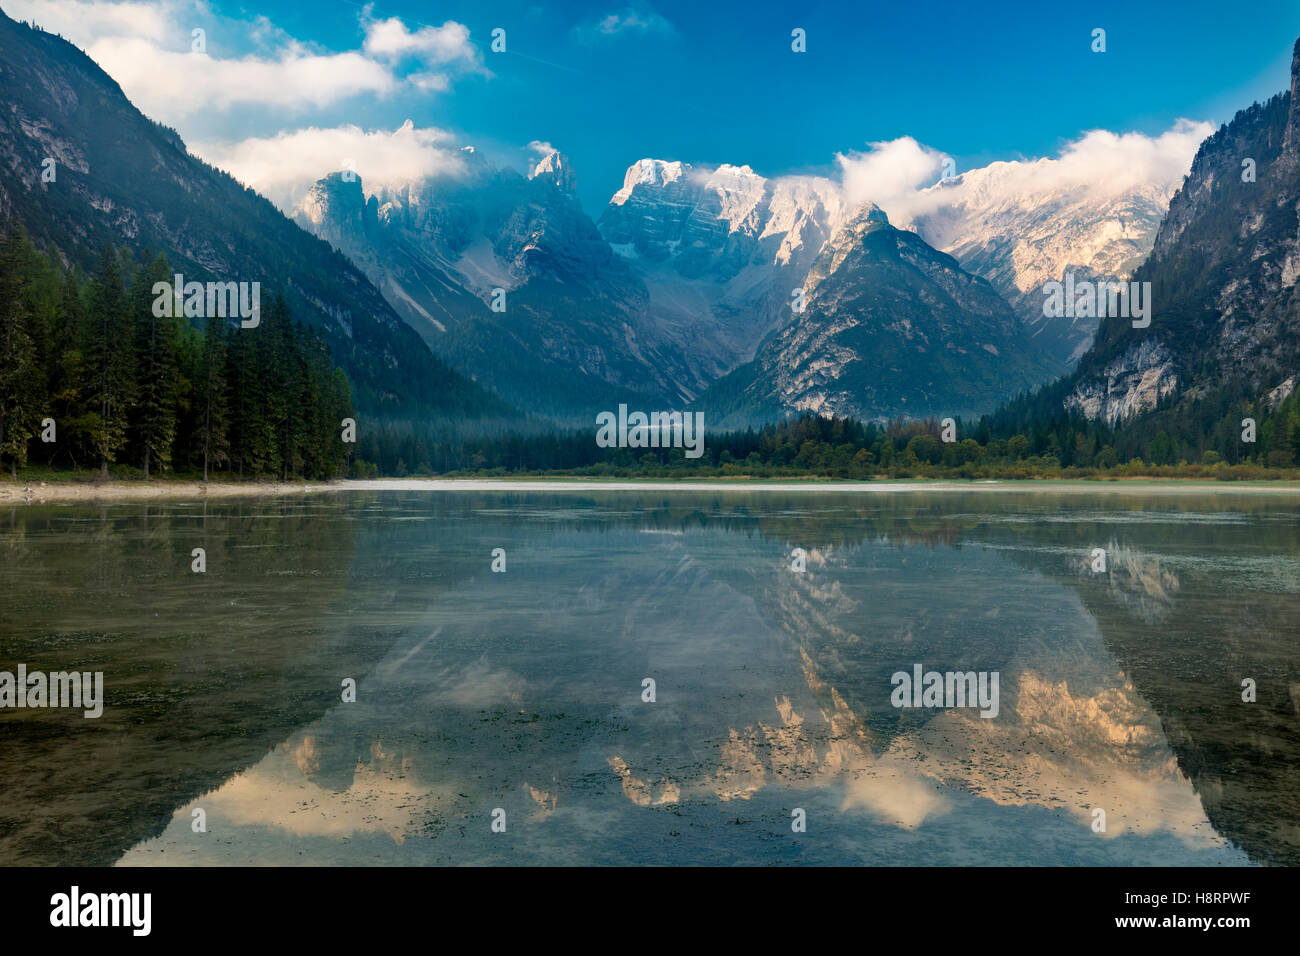 Monte Cristallo et les Dolomites reflète dans Lago Di Landro, province de Belluno, Italie Banque D'Images